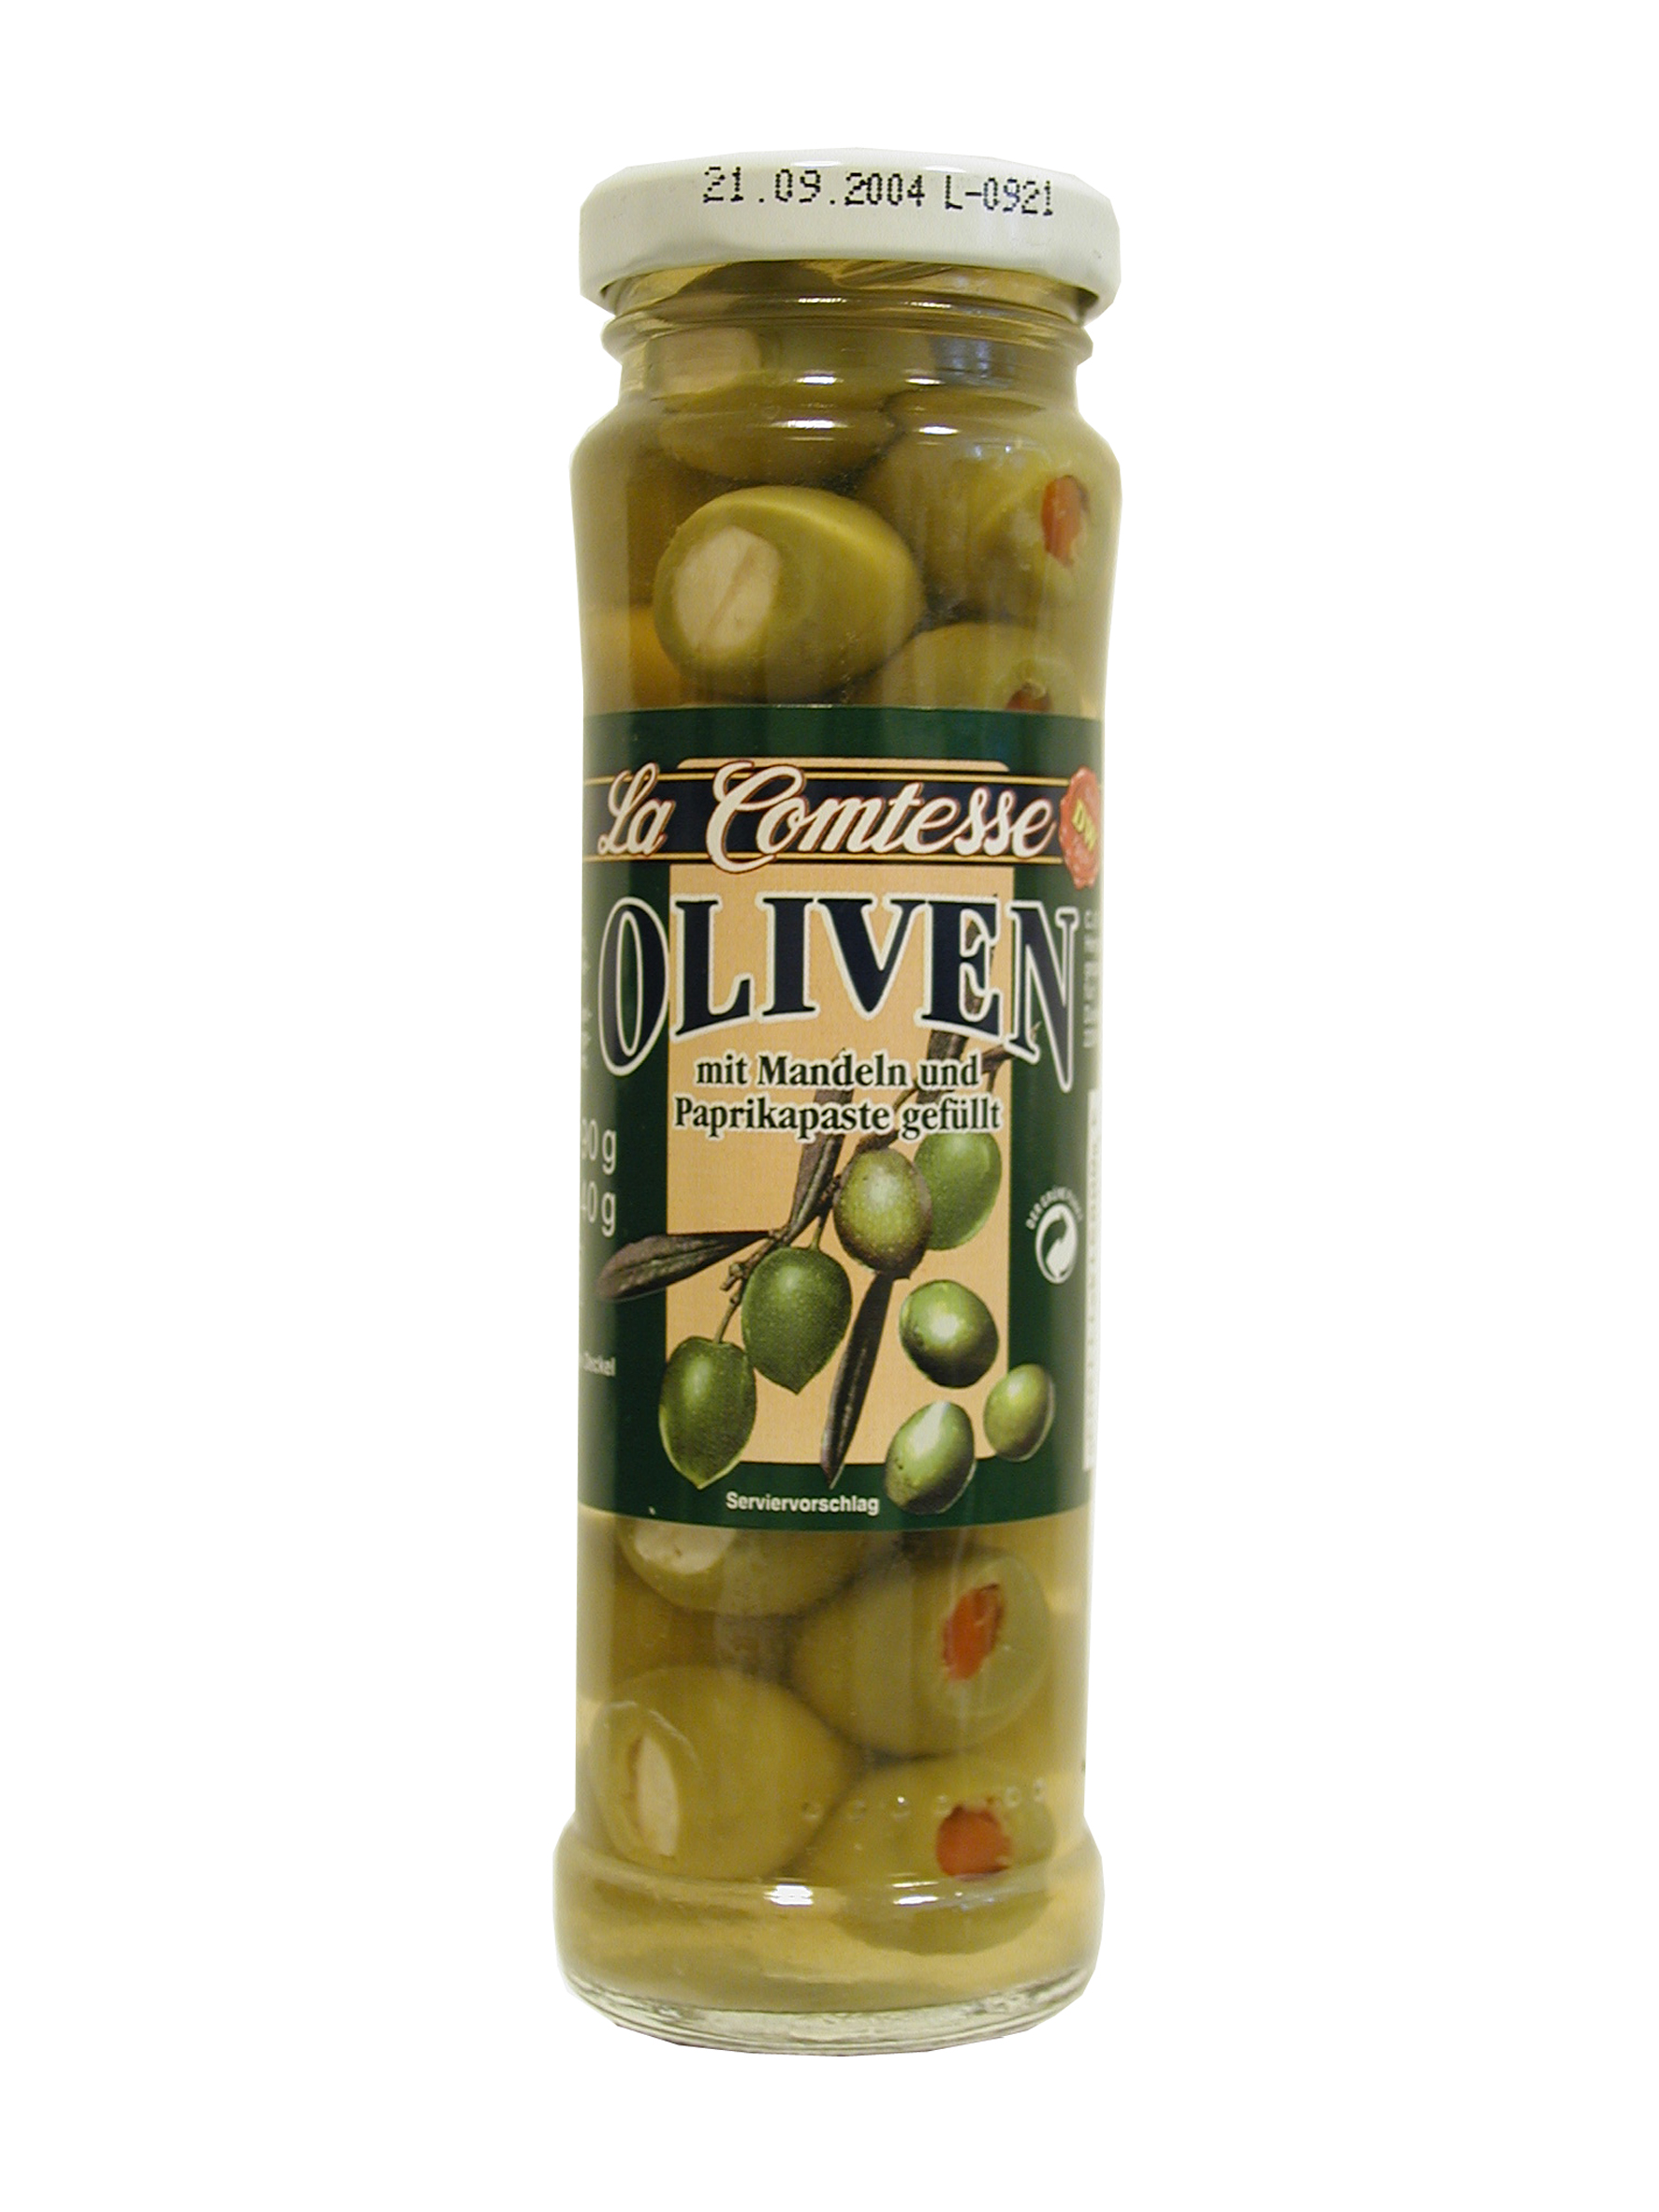 Grüne Oliven mit Mandeln & Paprika, handpack, 140 g